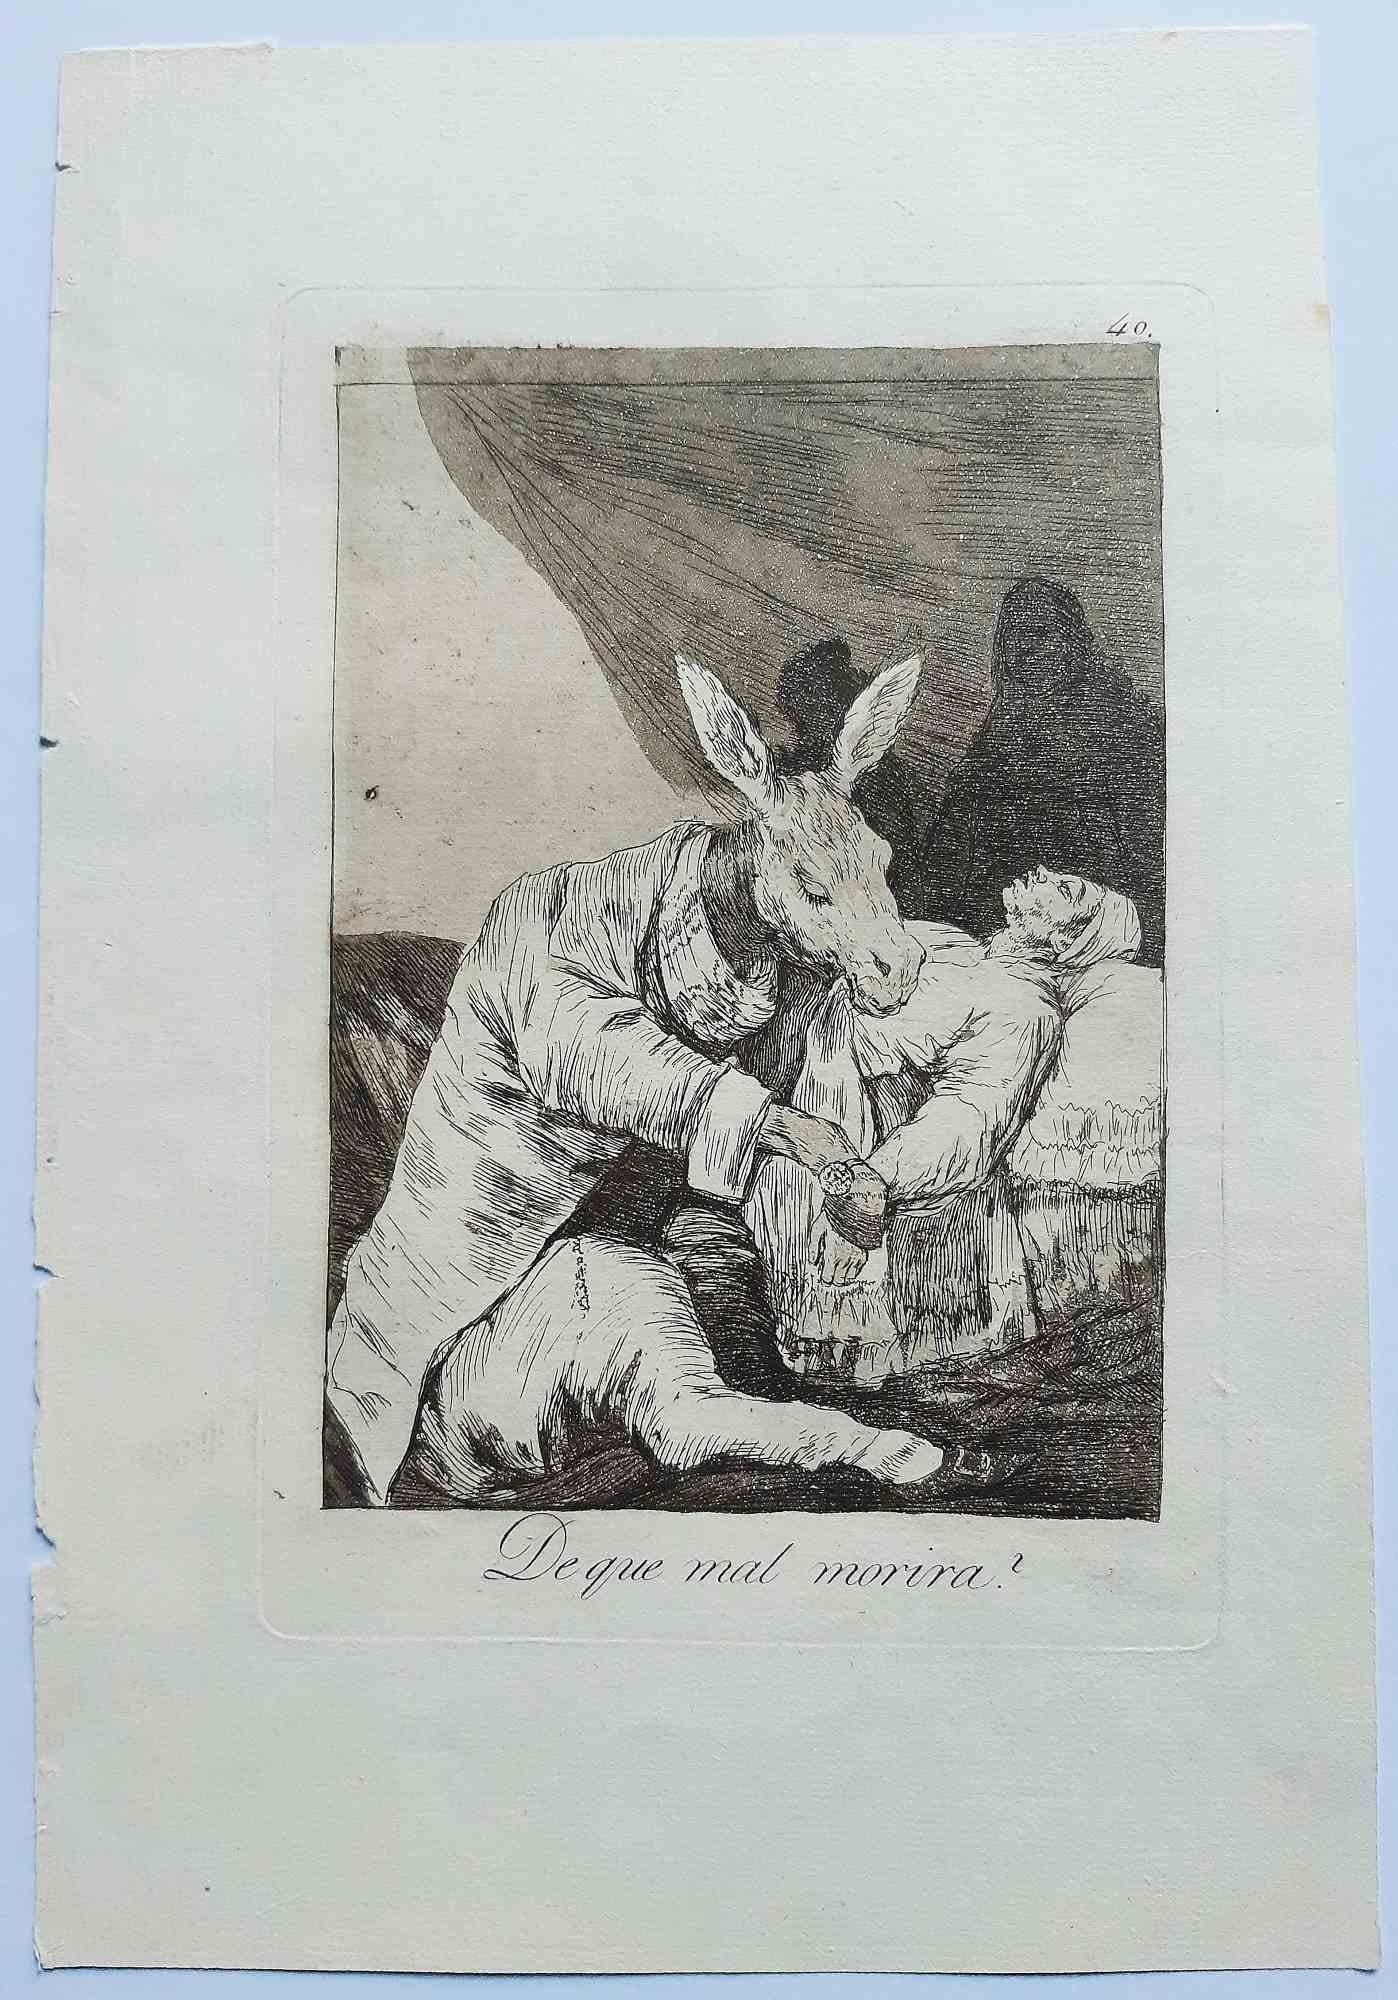 ¿De qué mal morirá ? de la première édition de Los Caprichos est une œuvre d'art originale réalisée par l'artiste Francisco Goya et publiée en 1799.

Eau-forte et aquatinte sur papier.

Cette gravure fait partie de la première édition de "Los